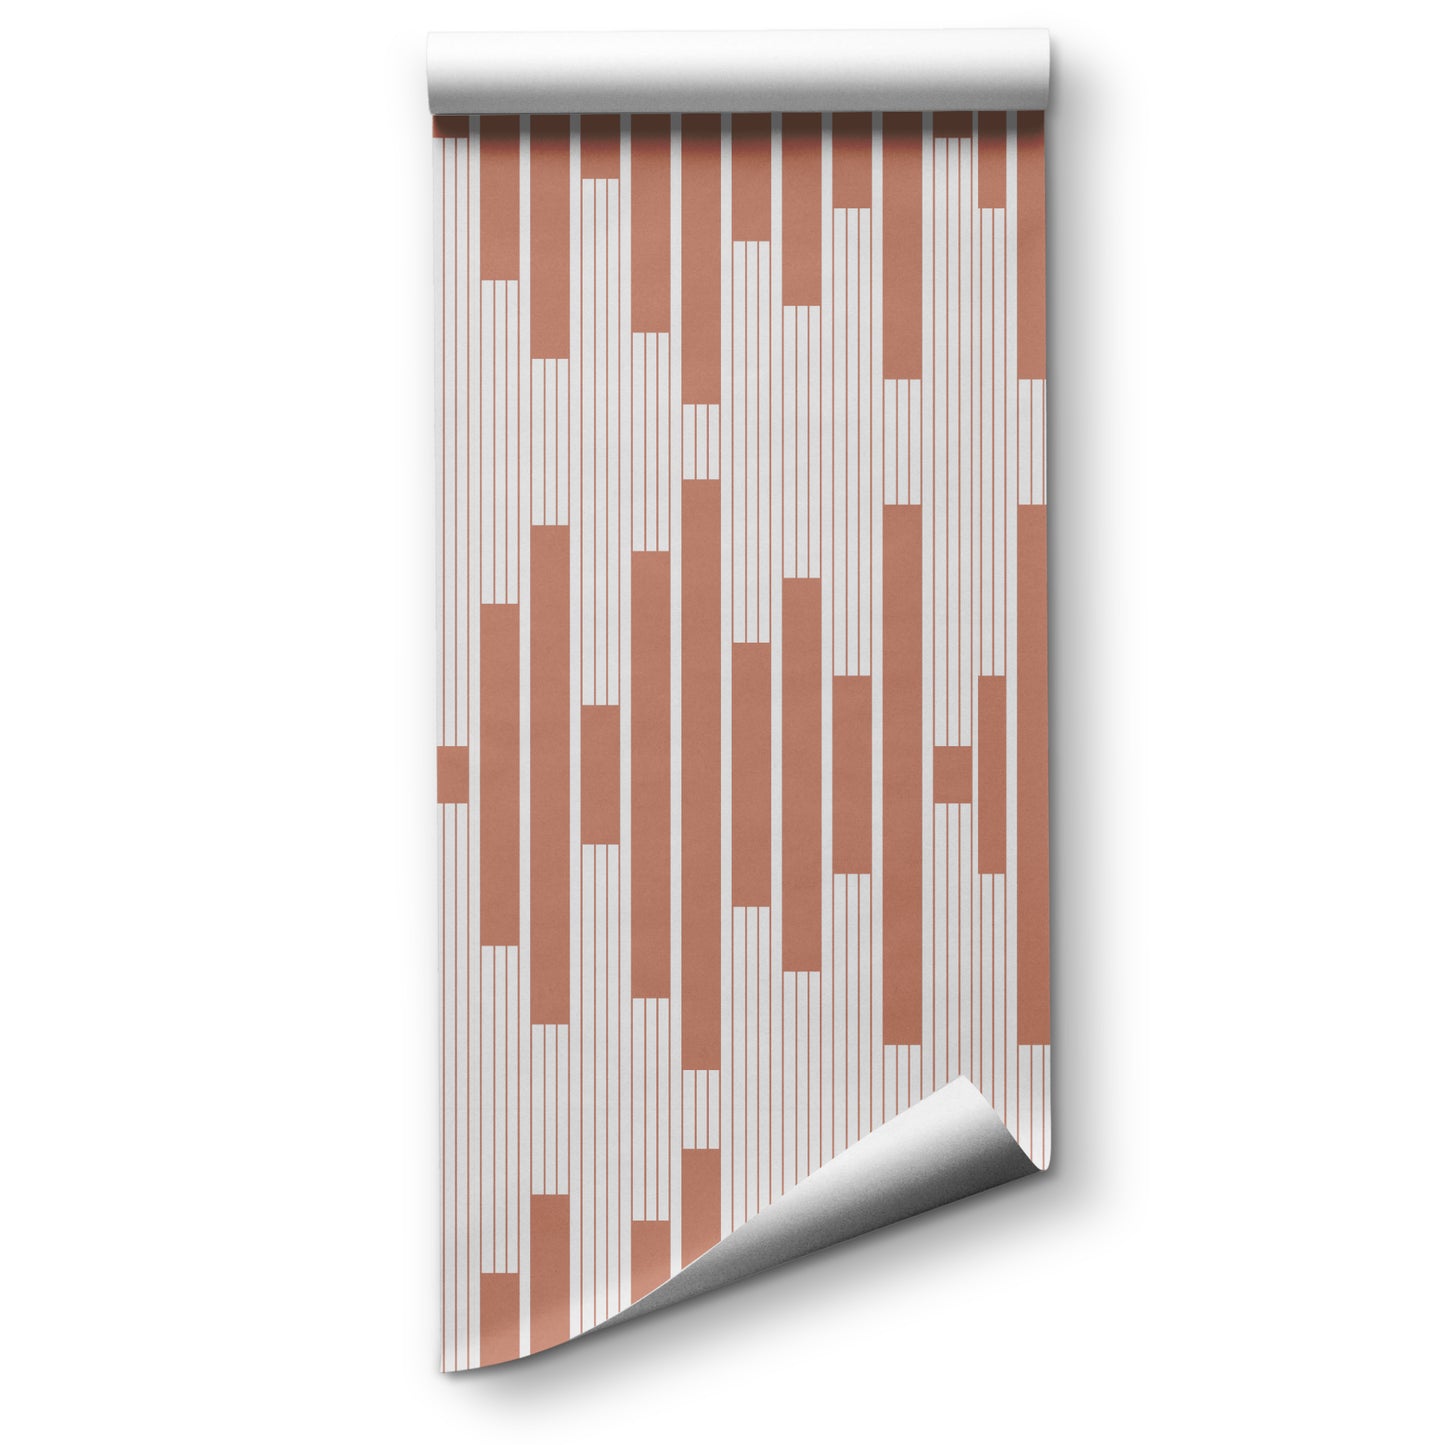 Monochrome Rhythm Stripe Wallpaper